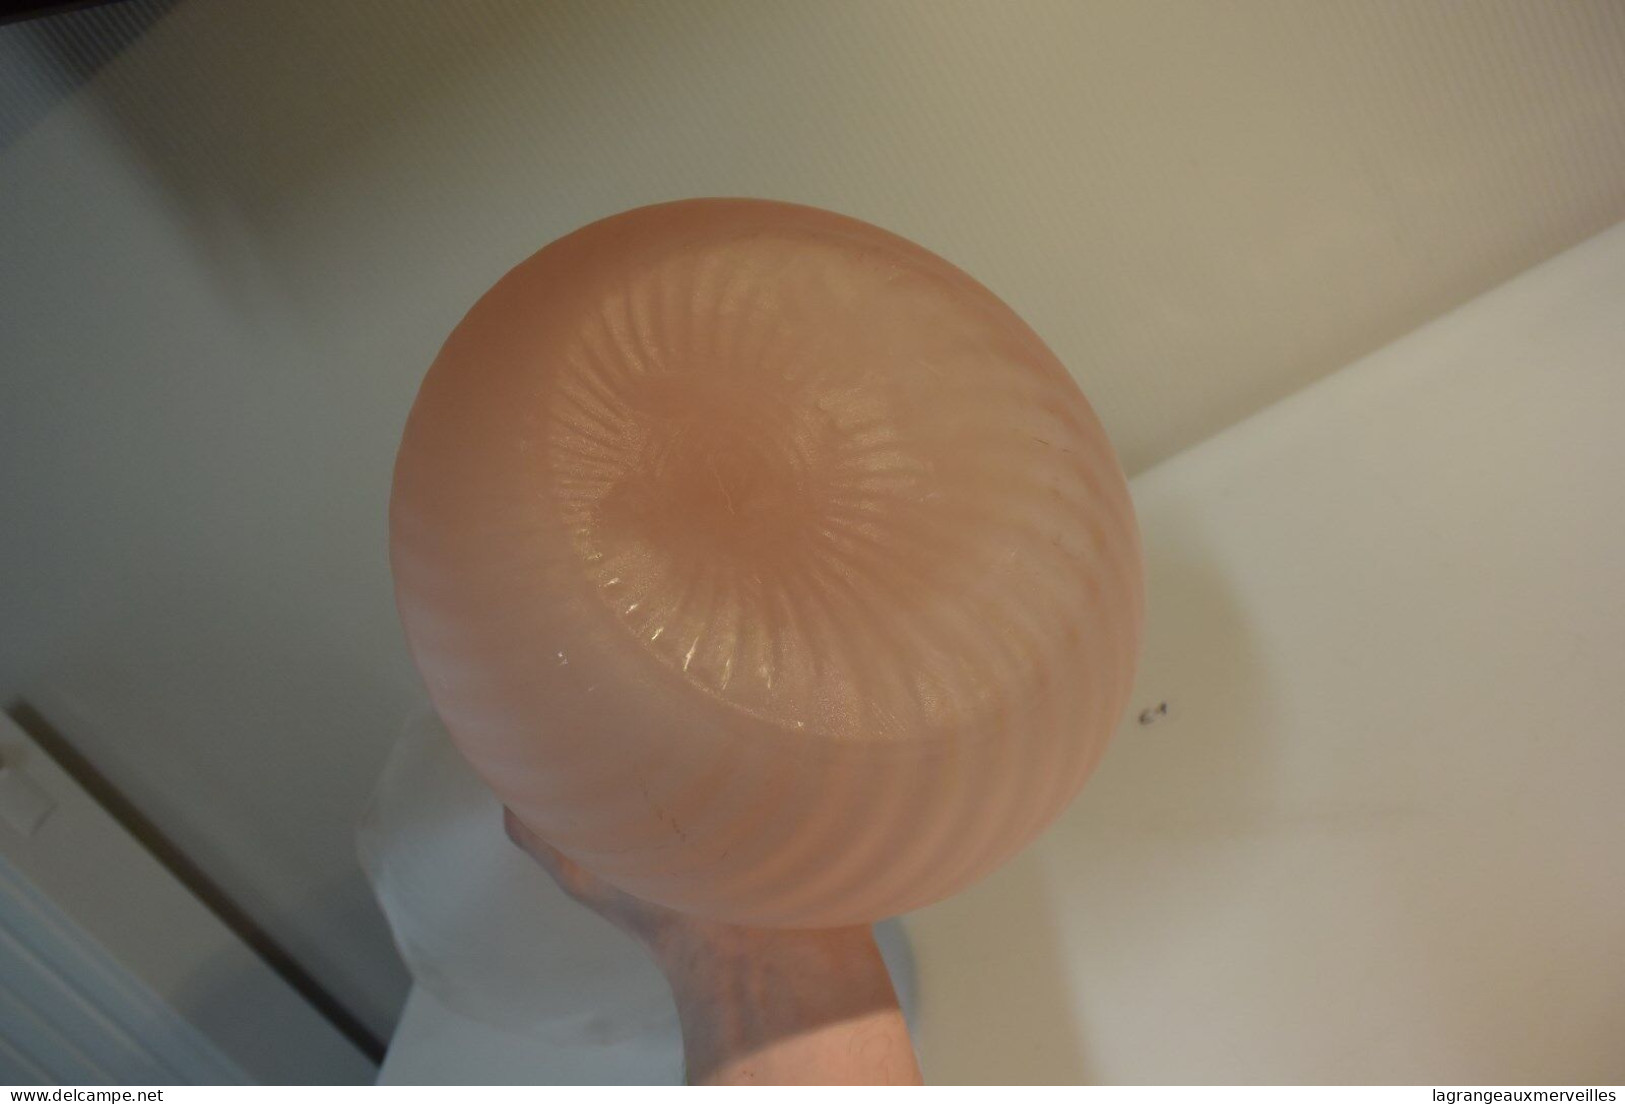 E1 Ancien Vase En Opaline - Couleur Rose - Jarrones